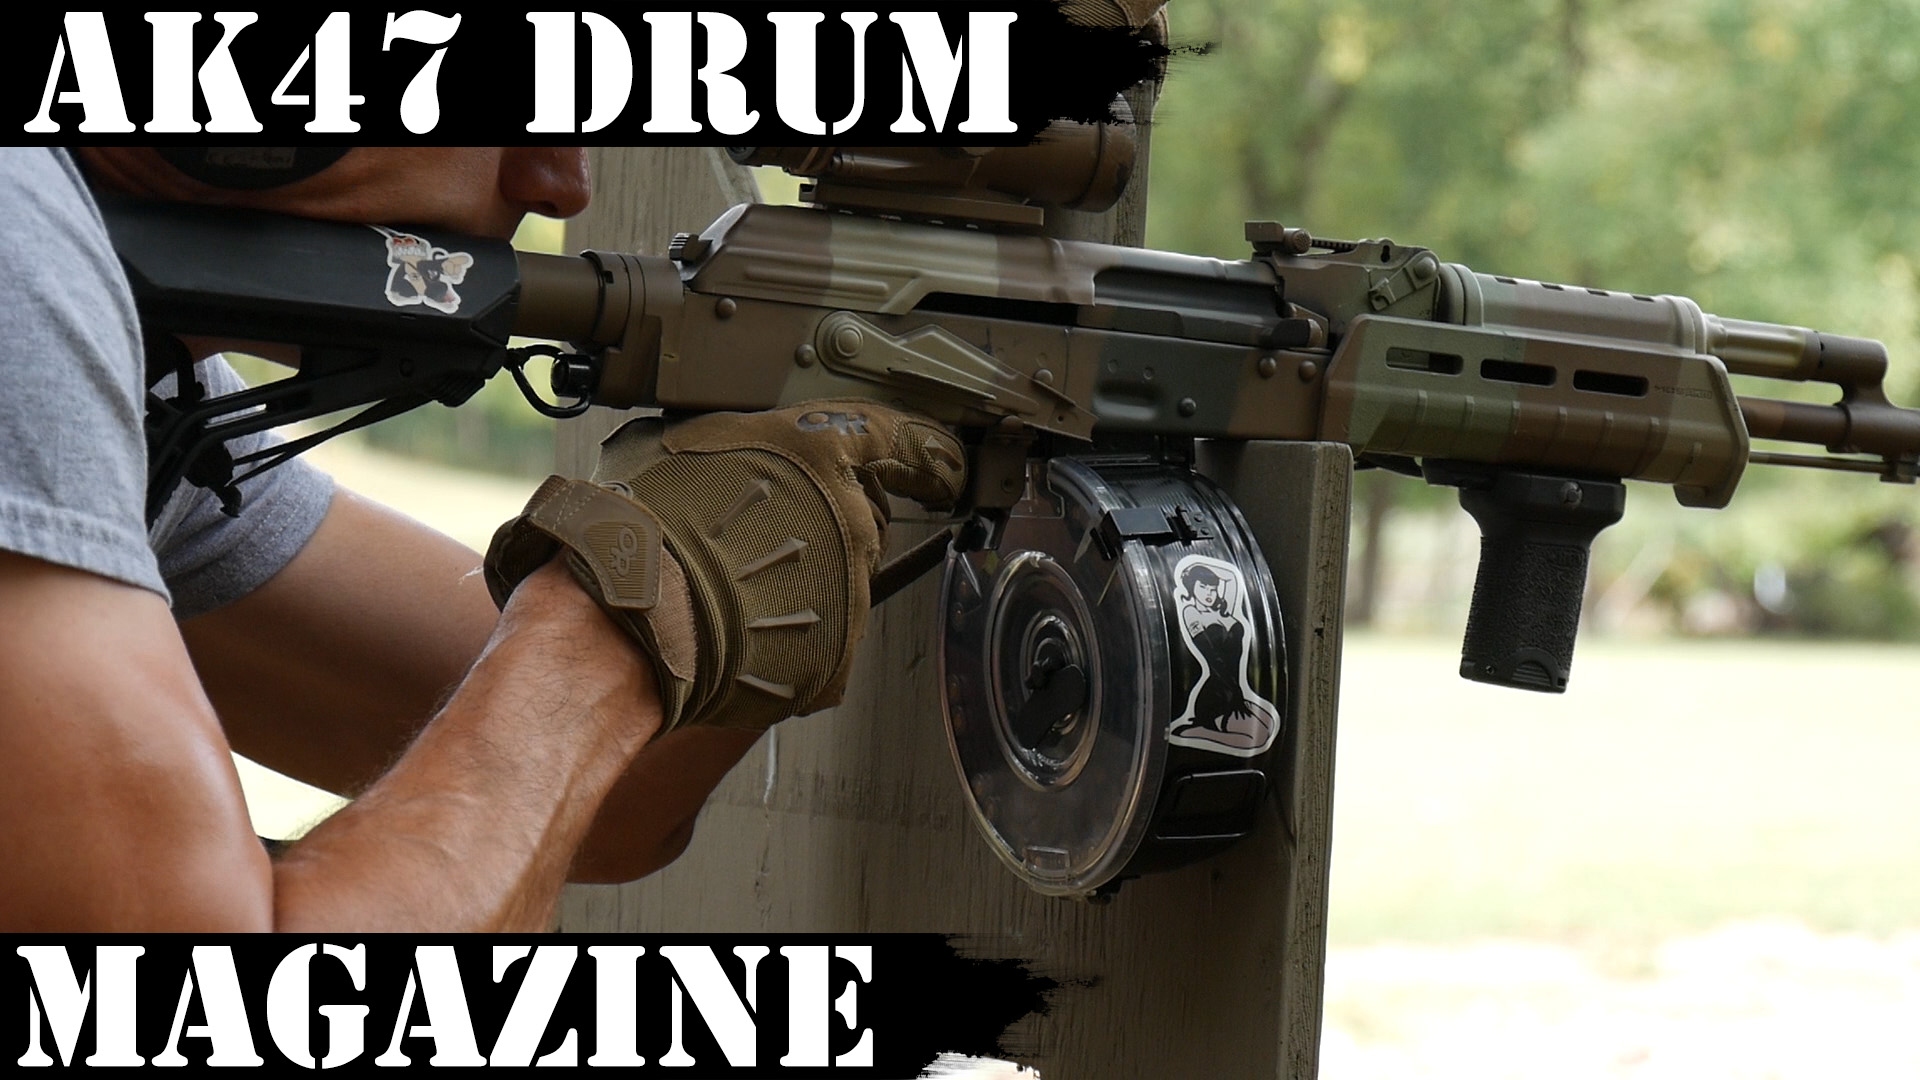 Ak47 Drum Magazine For Less Than 60 Ak Operators Union Local 47 74 ak...